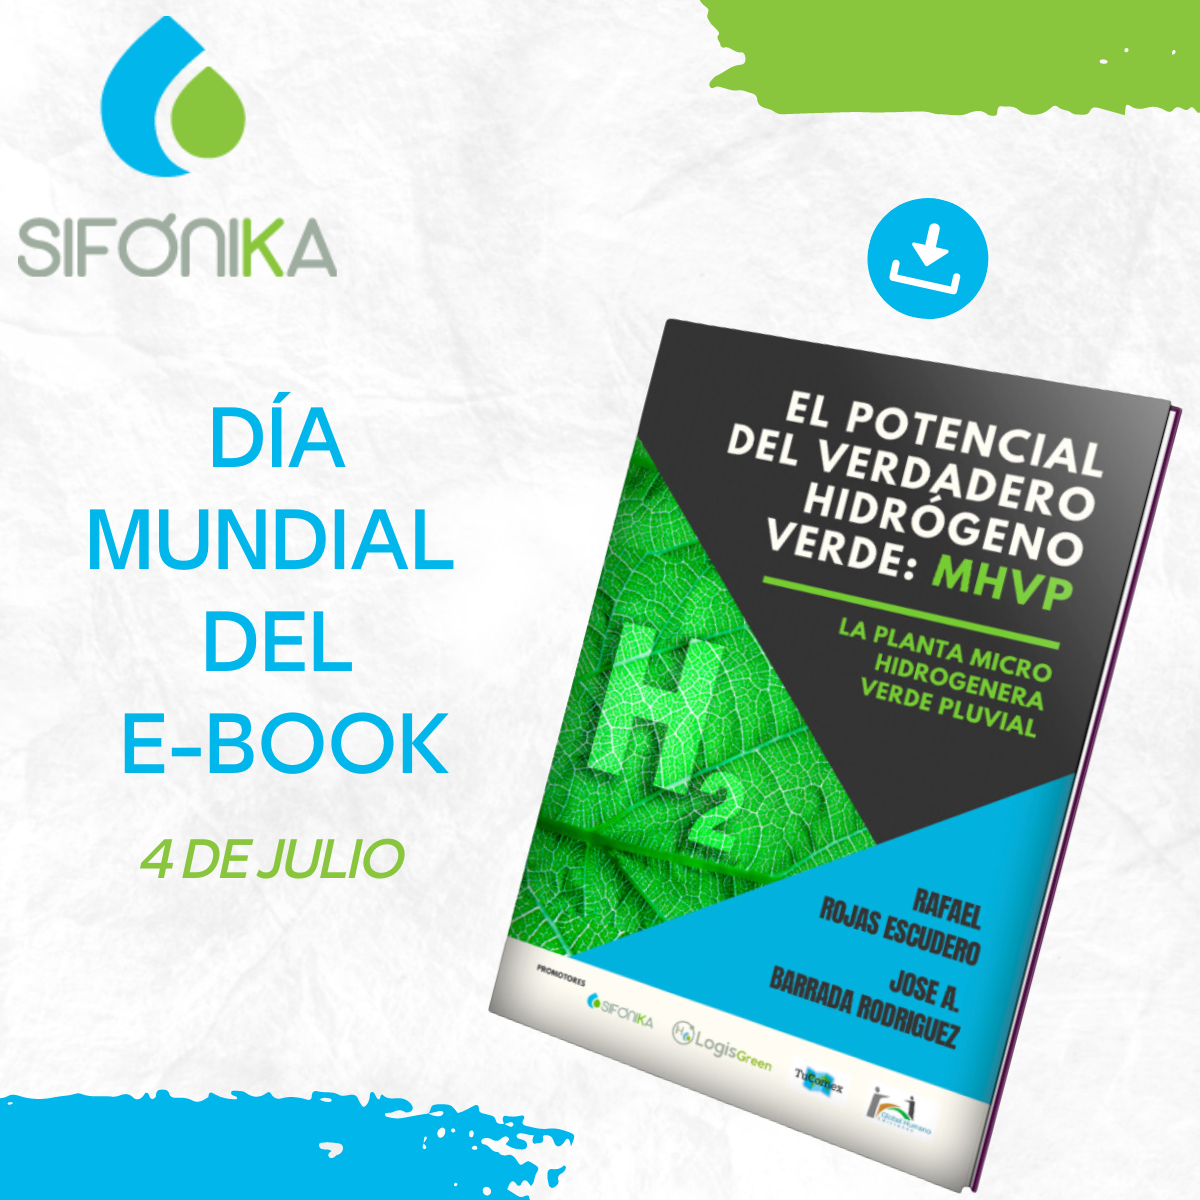 DIA MUNDIAL DEL E BOOK Día Mundial del E-book